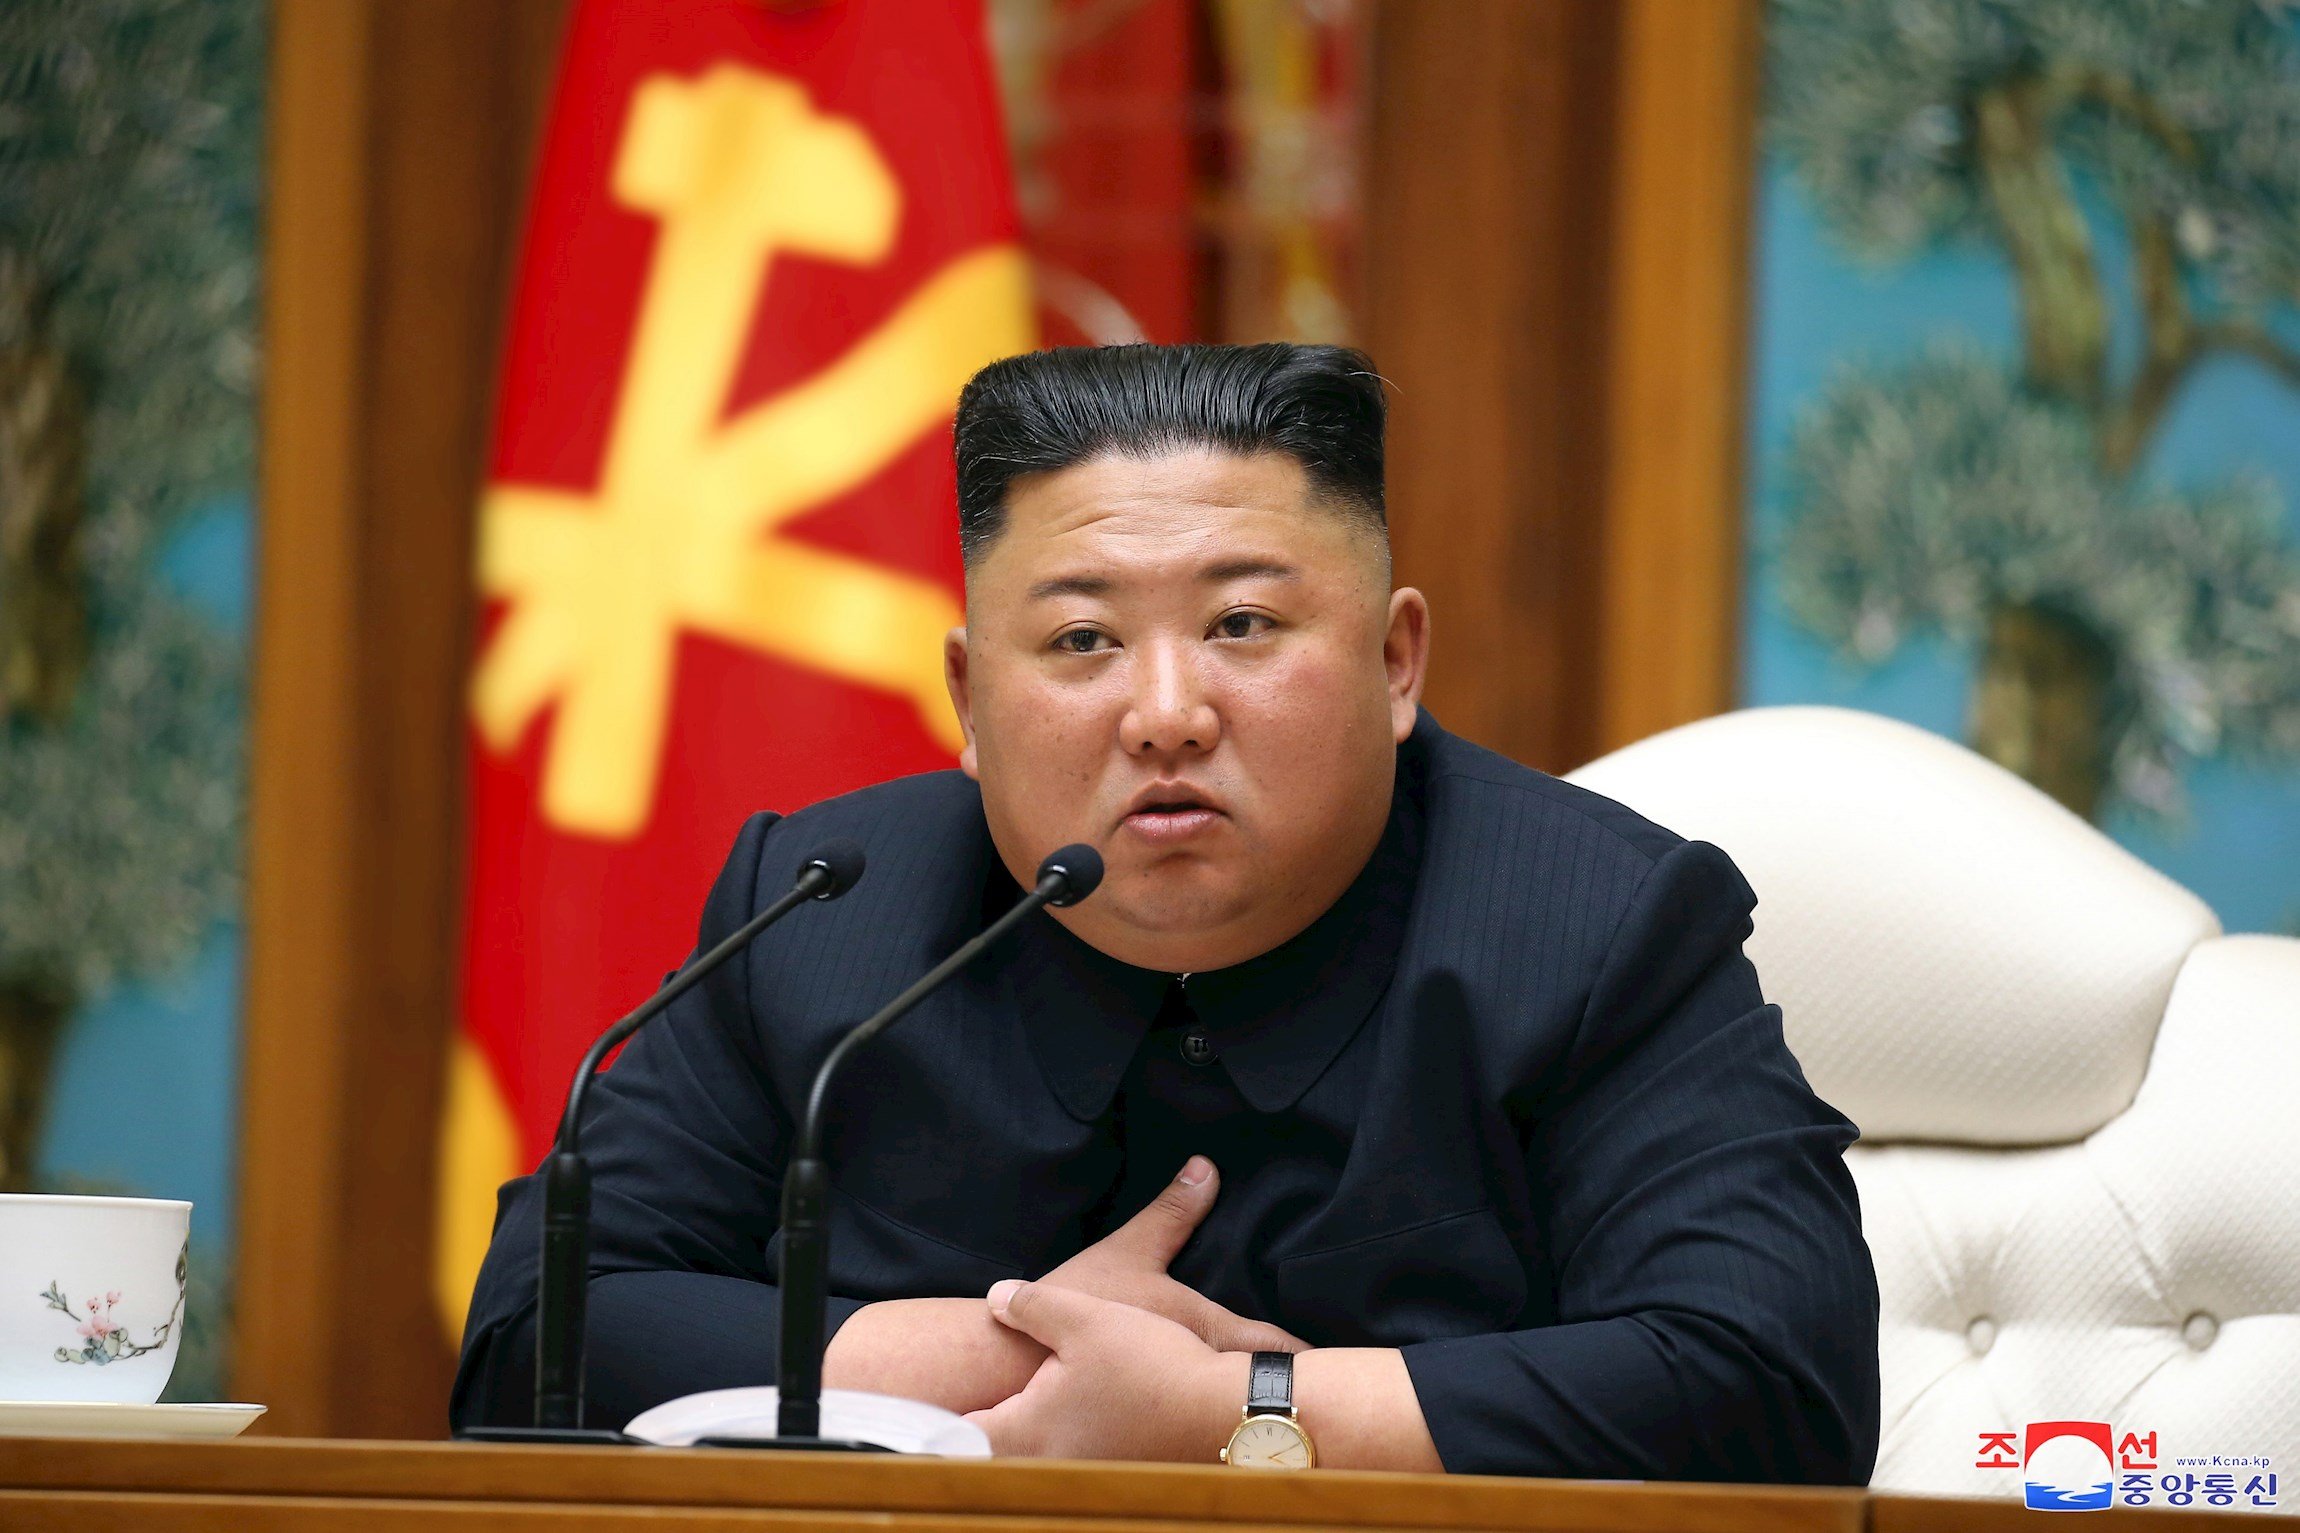 Seúl resta credibilidad al supuesto estado grave de Kim Jong-un